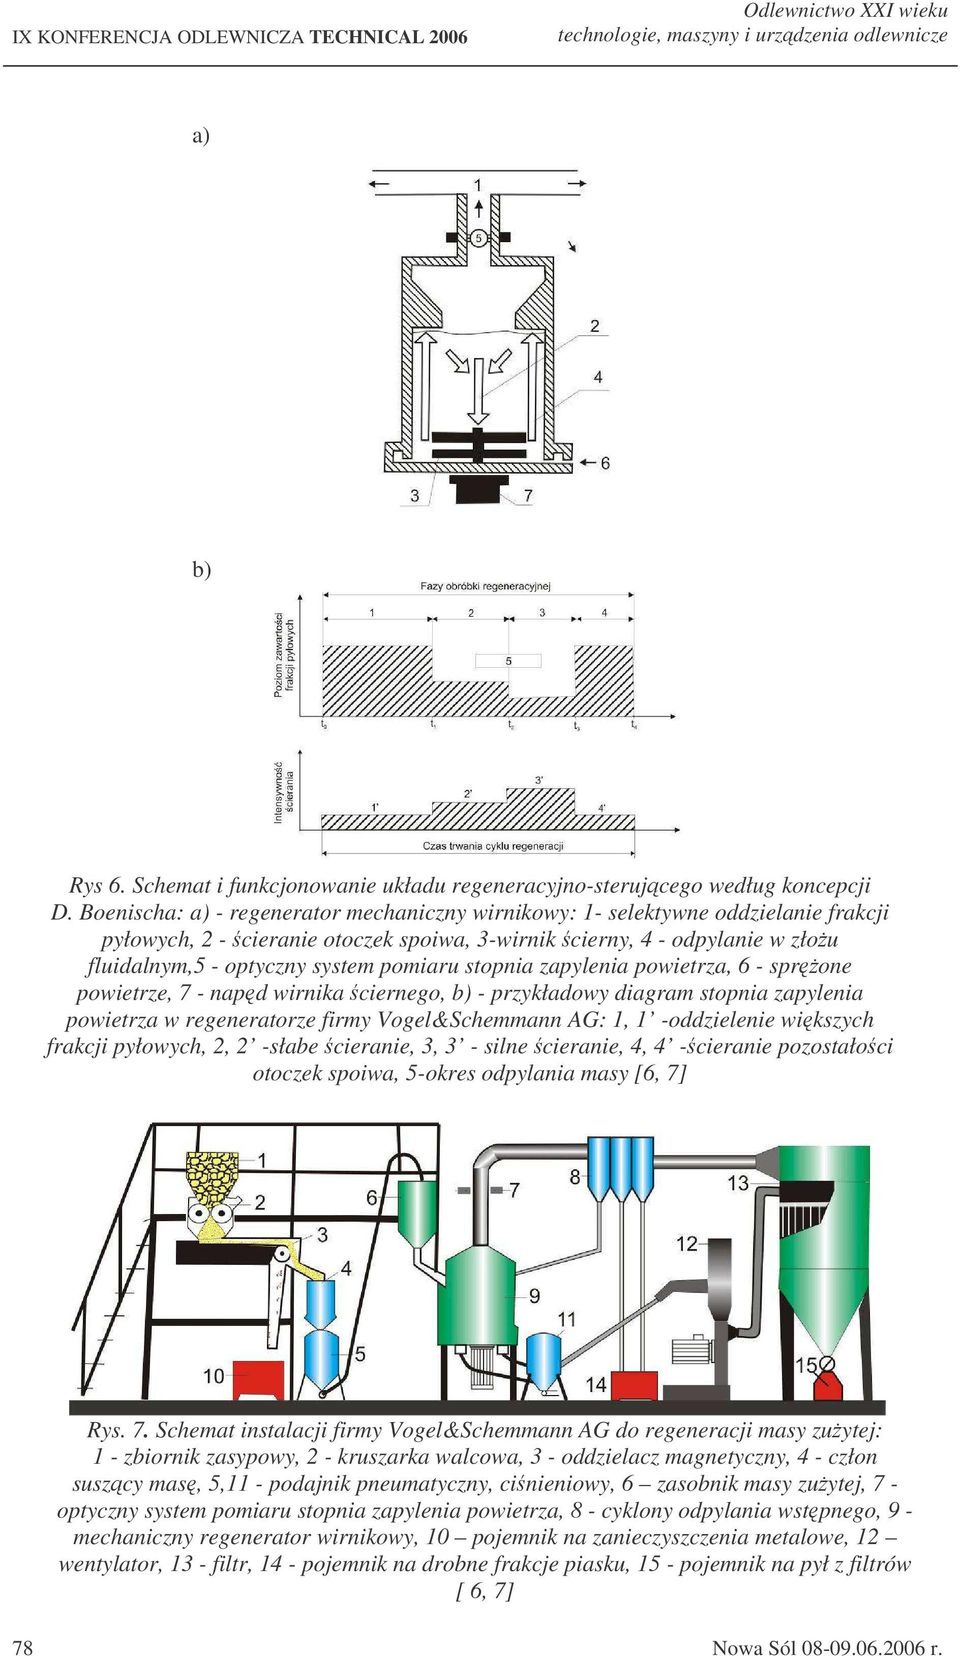 pomiaru stopnia zapylenia powietrza, 6 - sprone powietrze, 7 - napd wirnika ciernego, b) - przykładowy diagram stopnia zapylenia powietrza w regeneratorze firmy Vogel&Schemmann AG: 1, 1 -oddzielenie